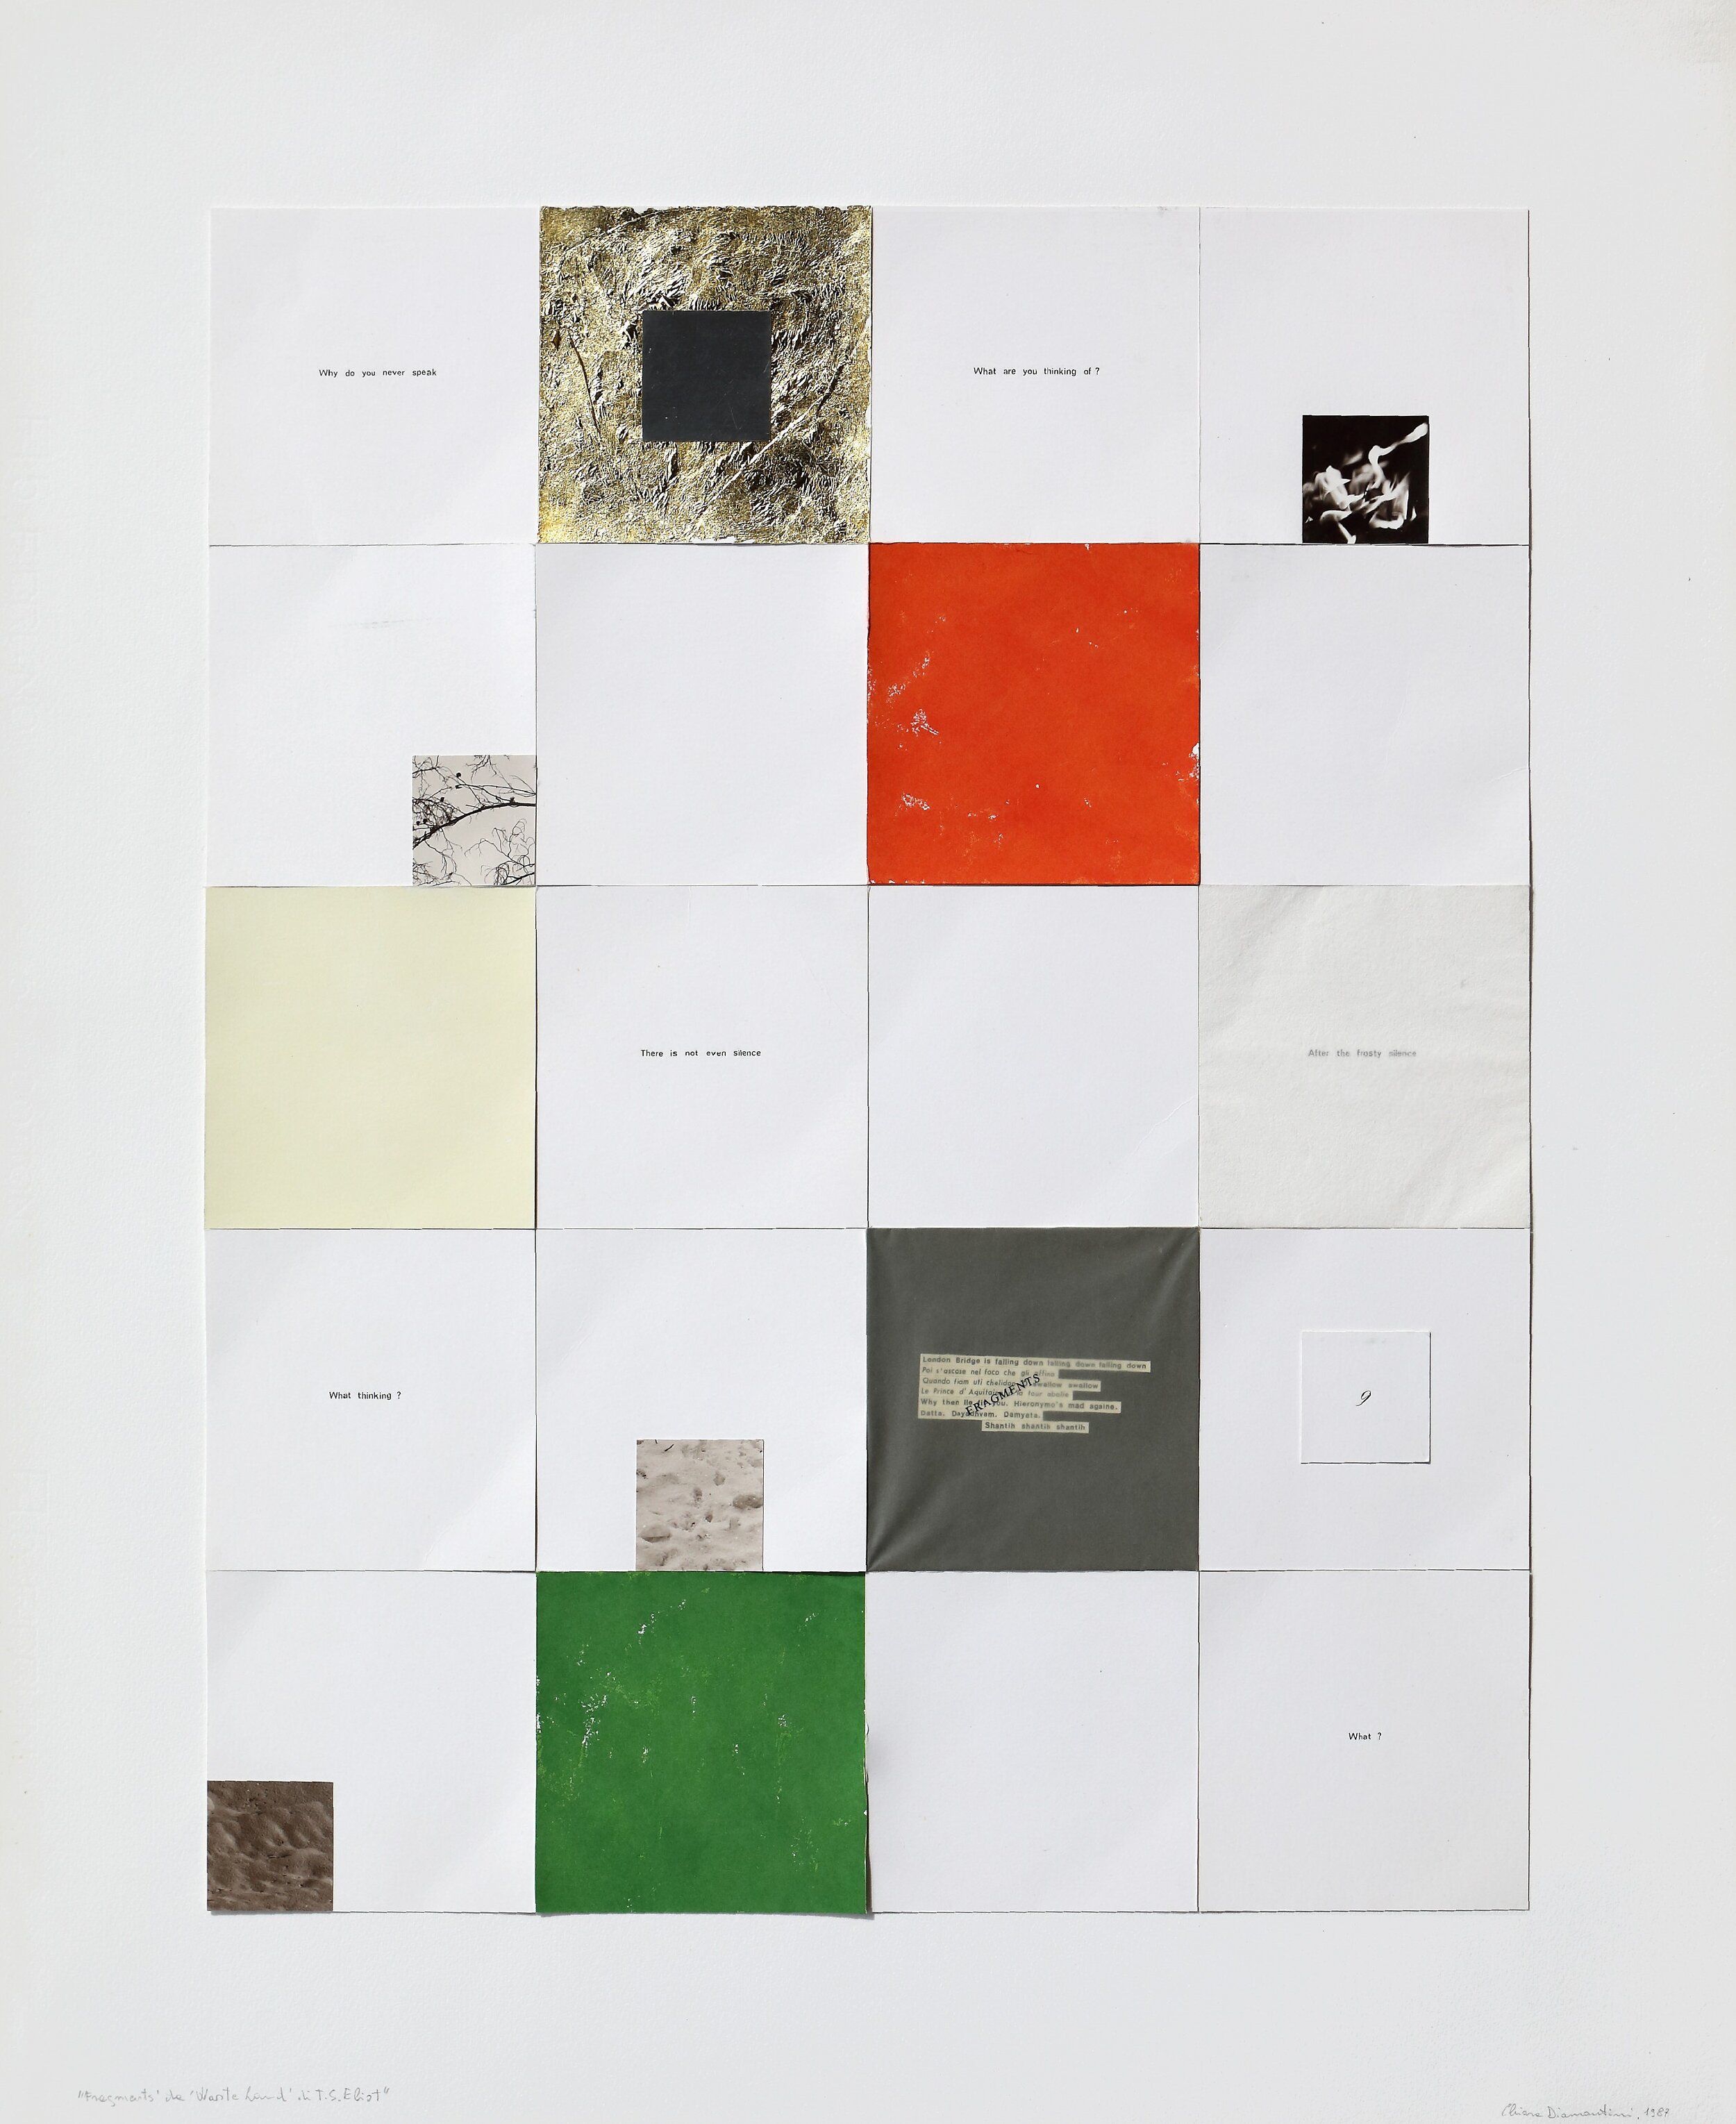 Chiara Diamantini, "Frammenti  da The waste land di T.S. Eliot", 1987 